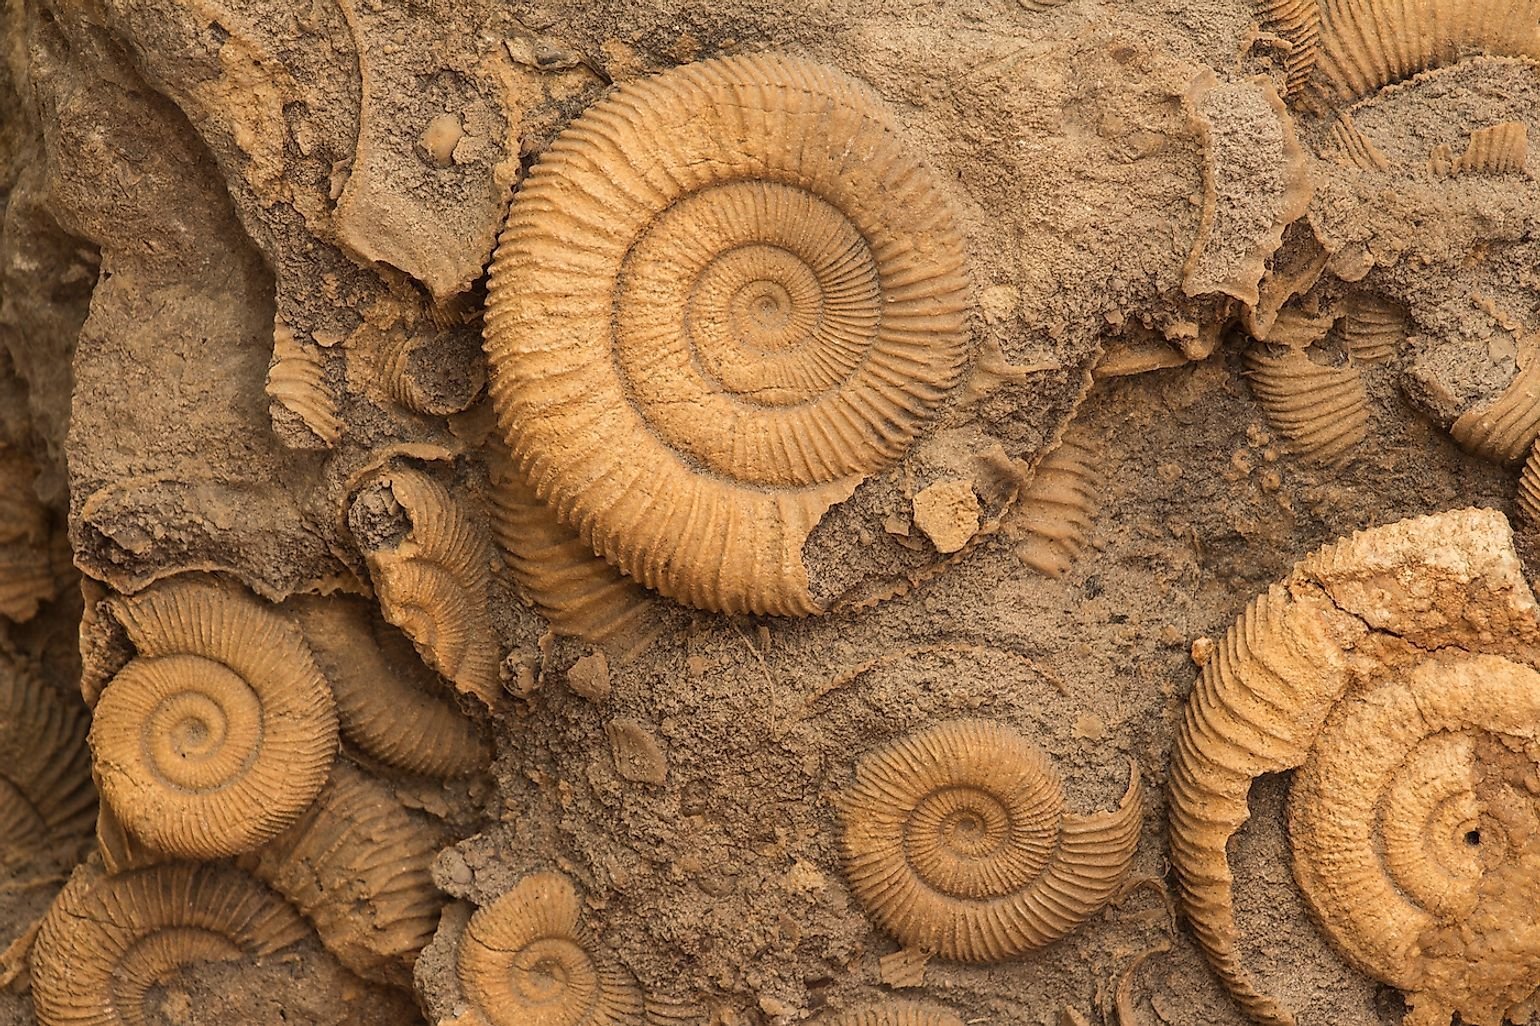 Наука изучающая развитие живой природы по окаменелостям